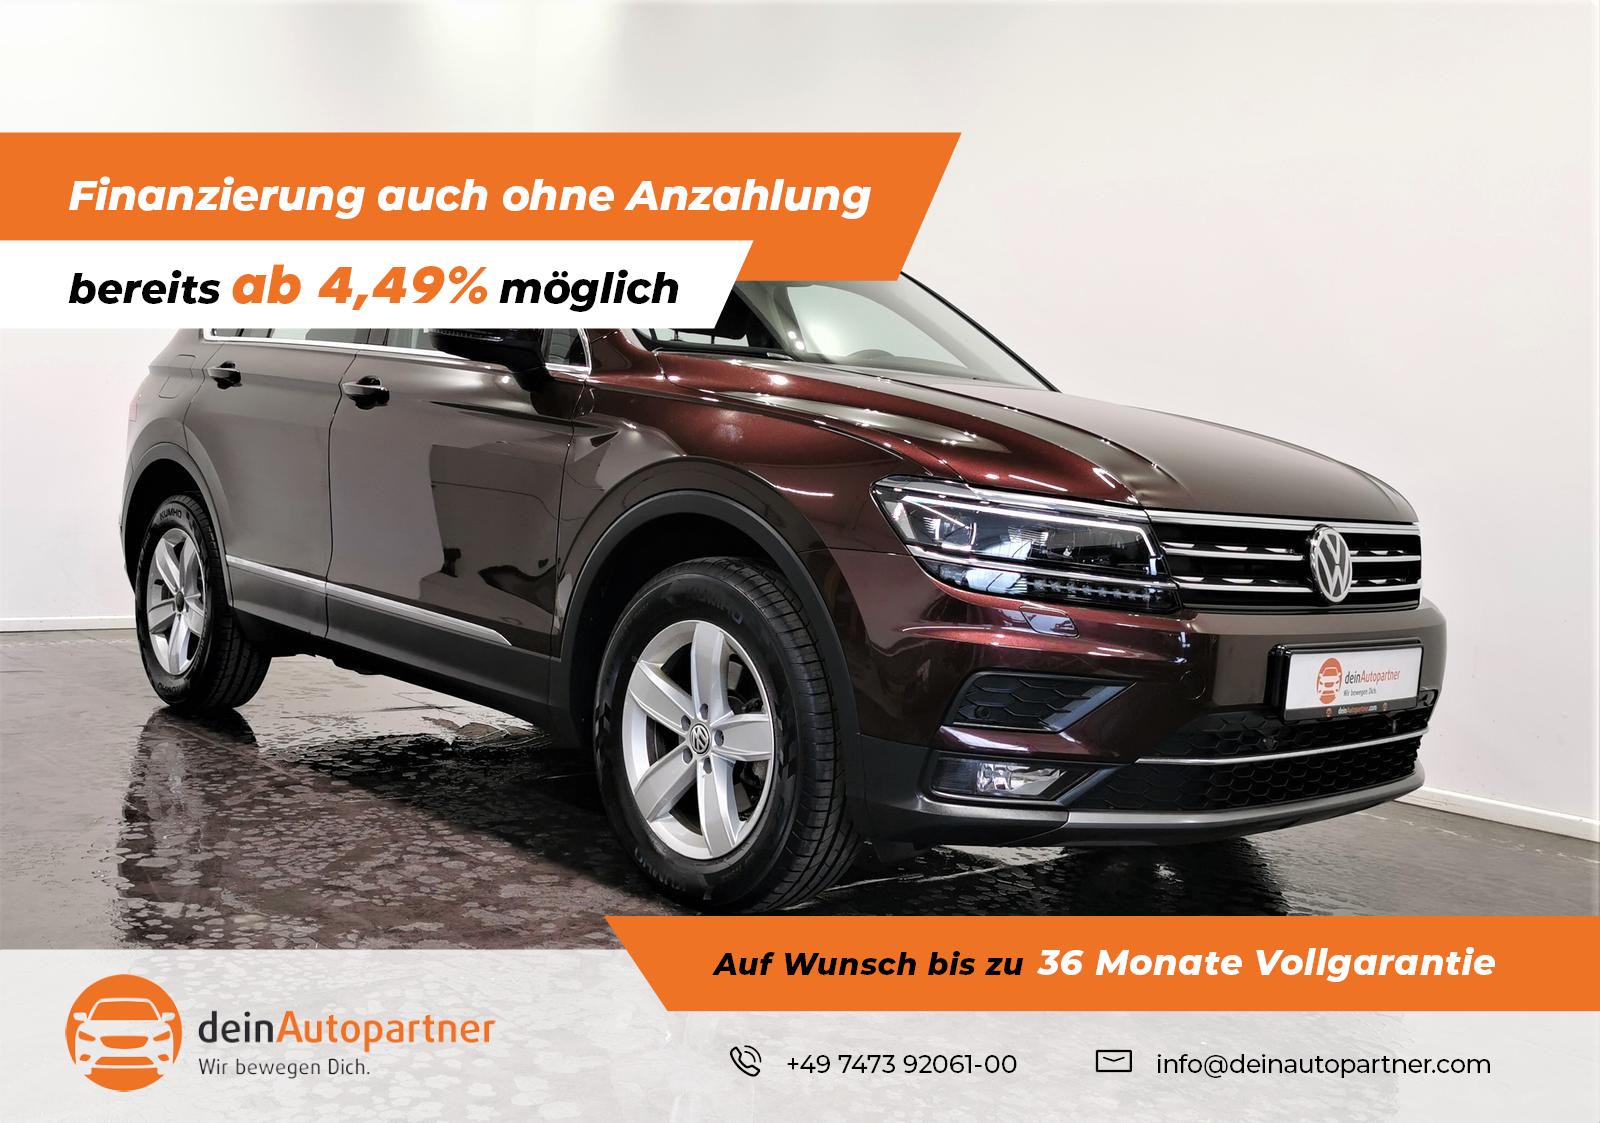 Kaufe Auto Fußmatten Für Volkswagen VW Tiguan 2017 2018 2019 Nach